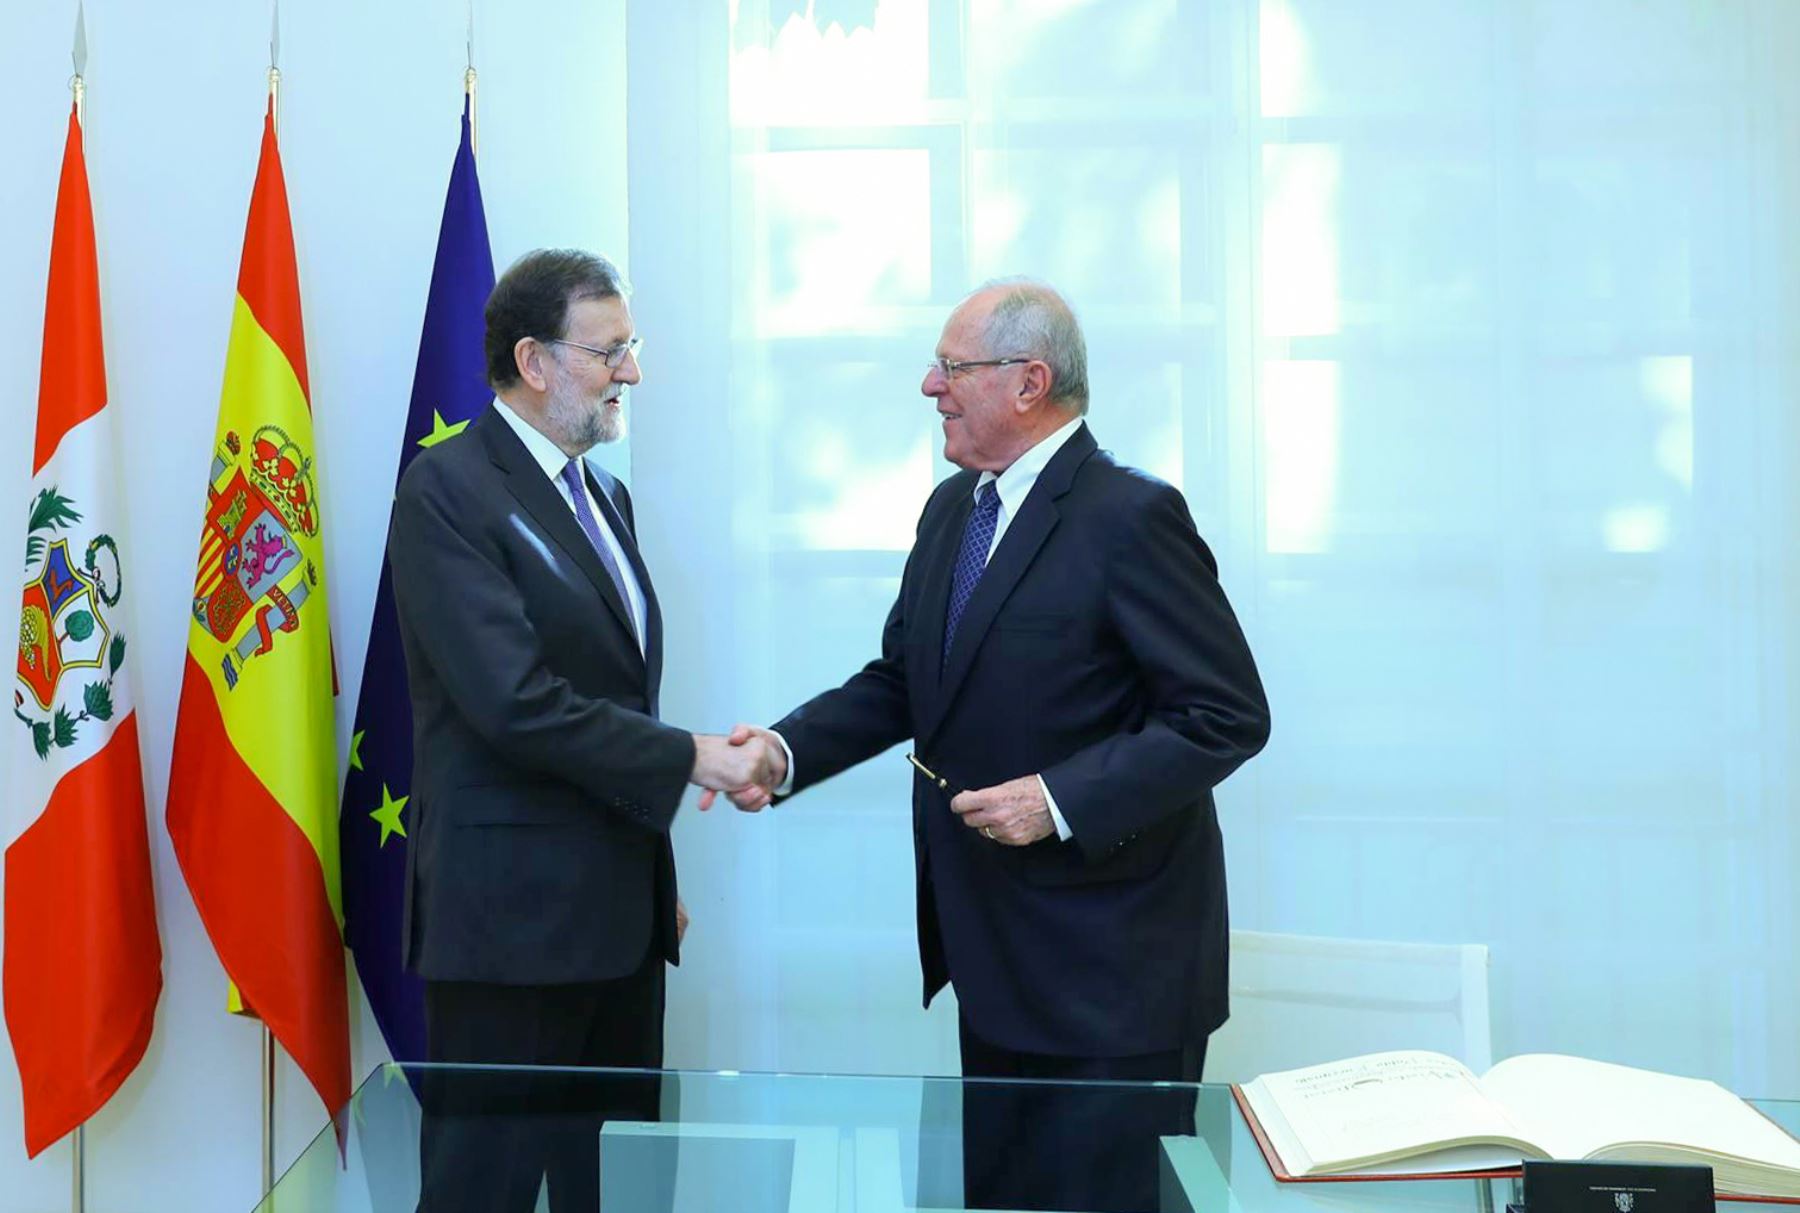 El jefe del Estado, Pedro Pablo Kuczynski, es recibido por el presidente del Gobierno Español, Mariano Rajoy, en el Palacio de Moncloa. Foto: ANDINA/ Andres Valle - Presidencia